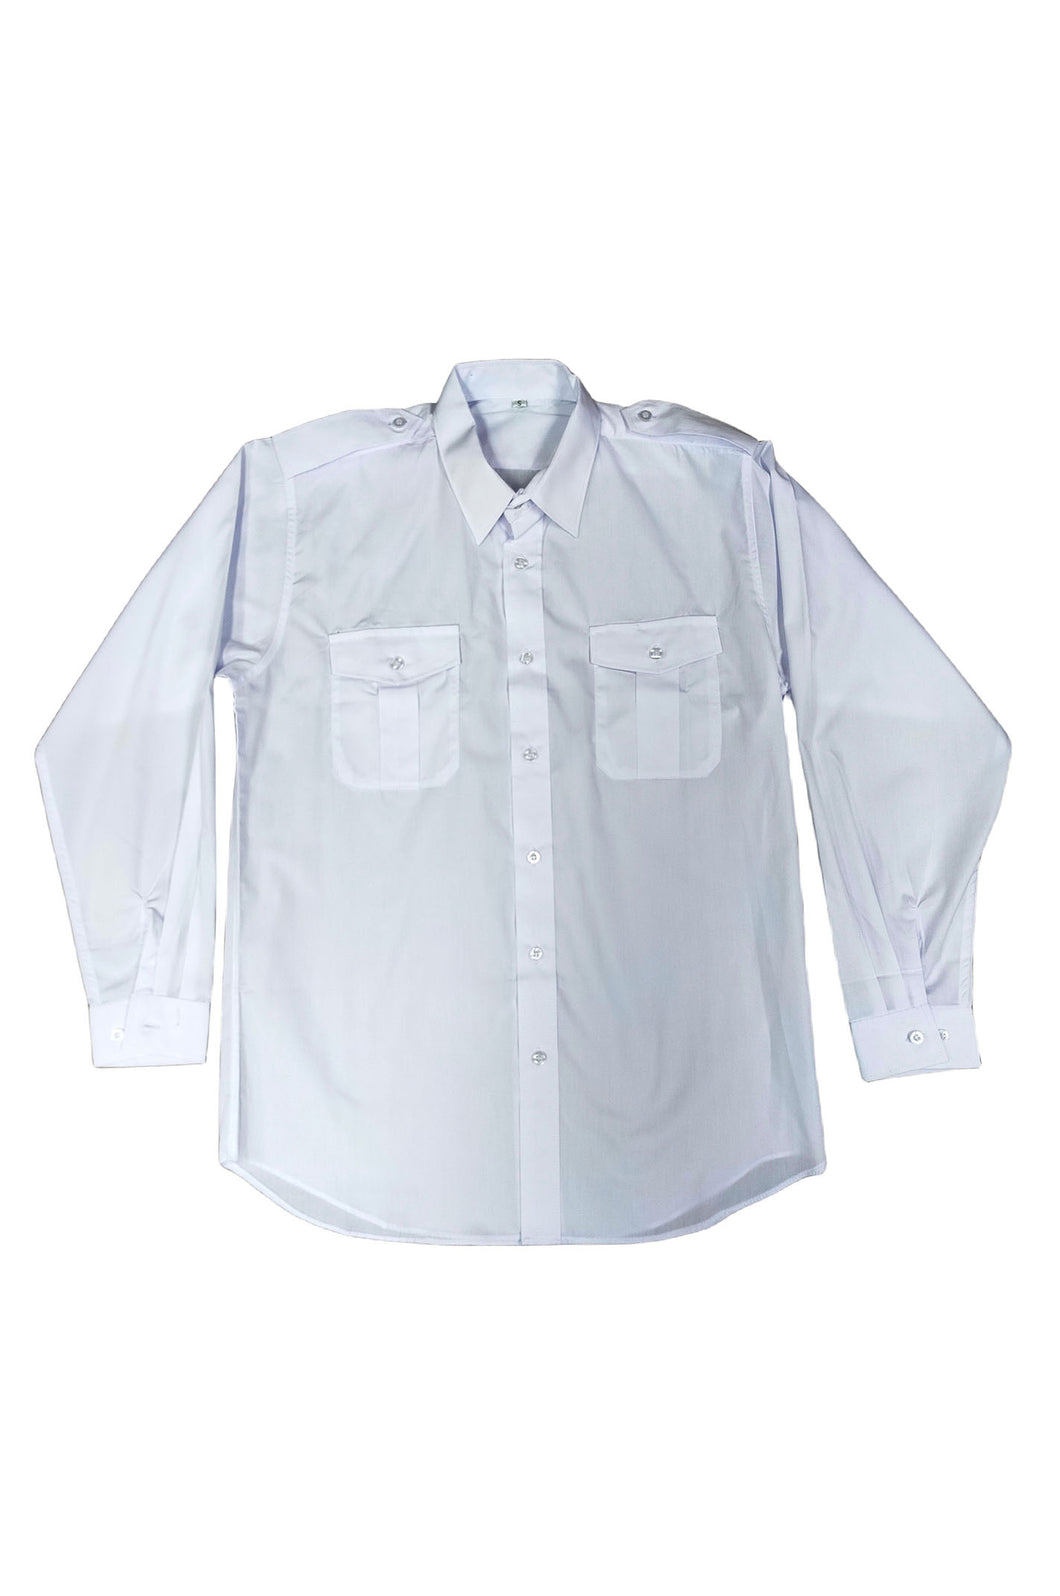 訂製襯衫 量身訂做襯衫製作 網上訂購襯衫 恤衫供應商 HK-Hanyeung-001